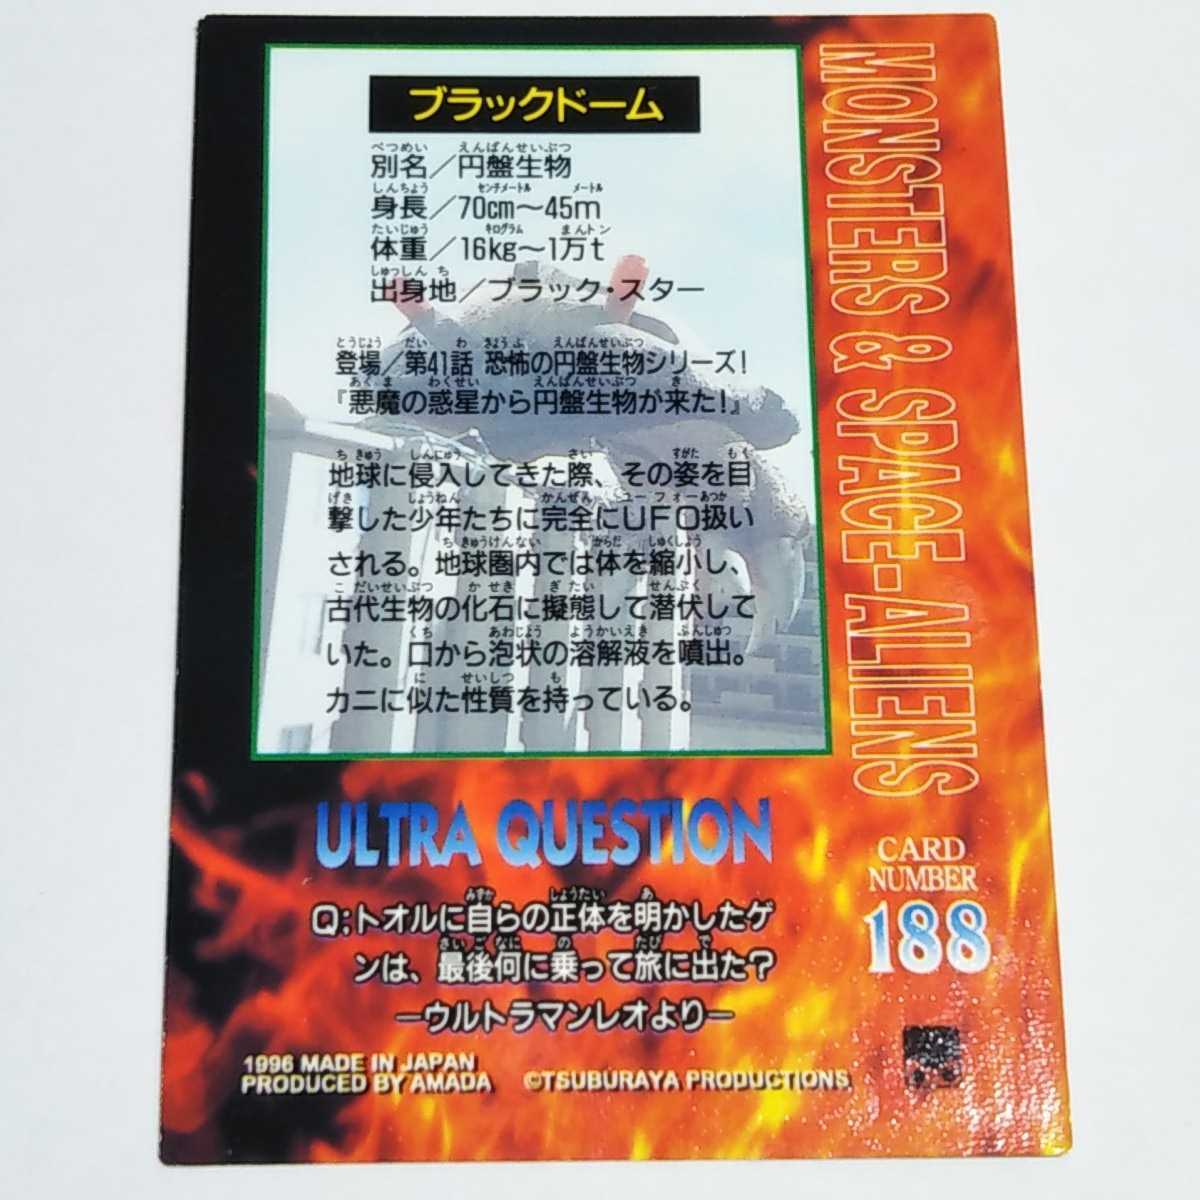  Amada 1996 Ultraman trading collection черный купол карта No.188